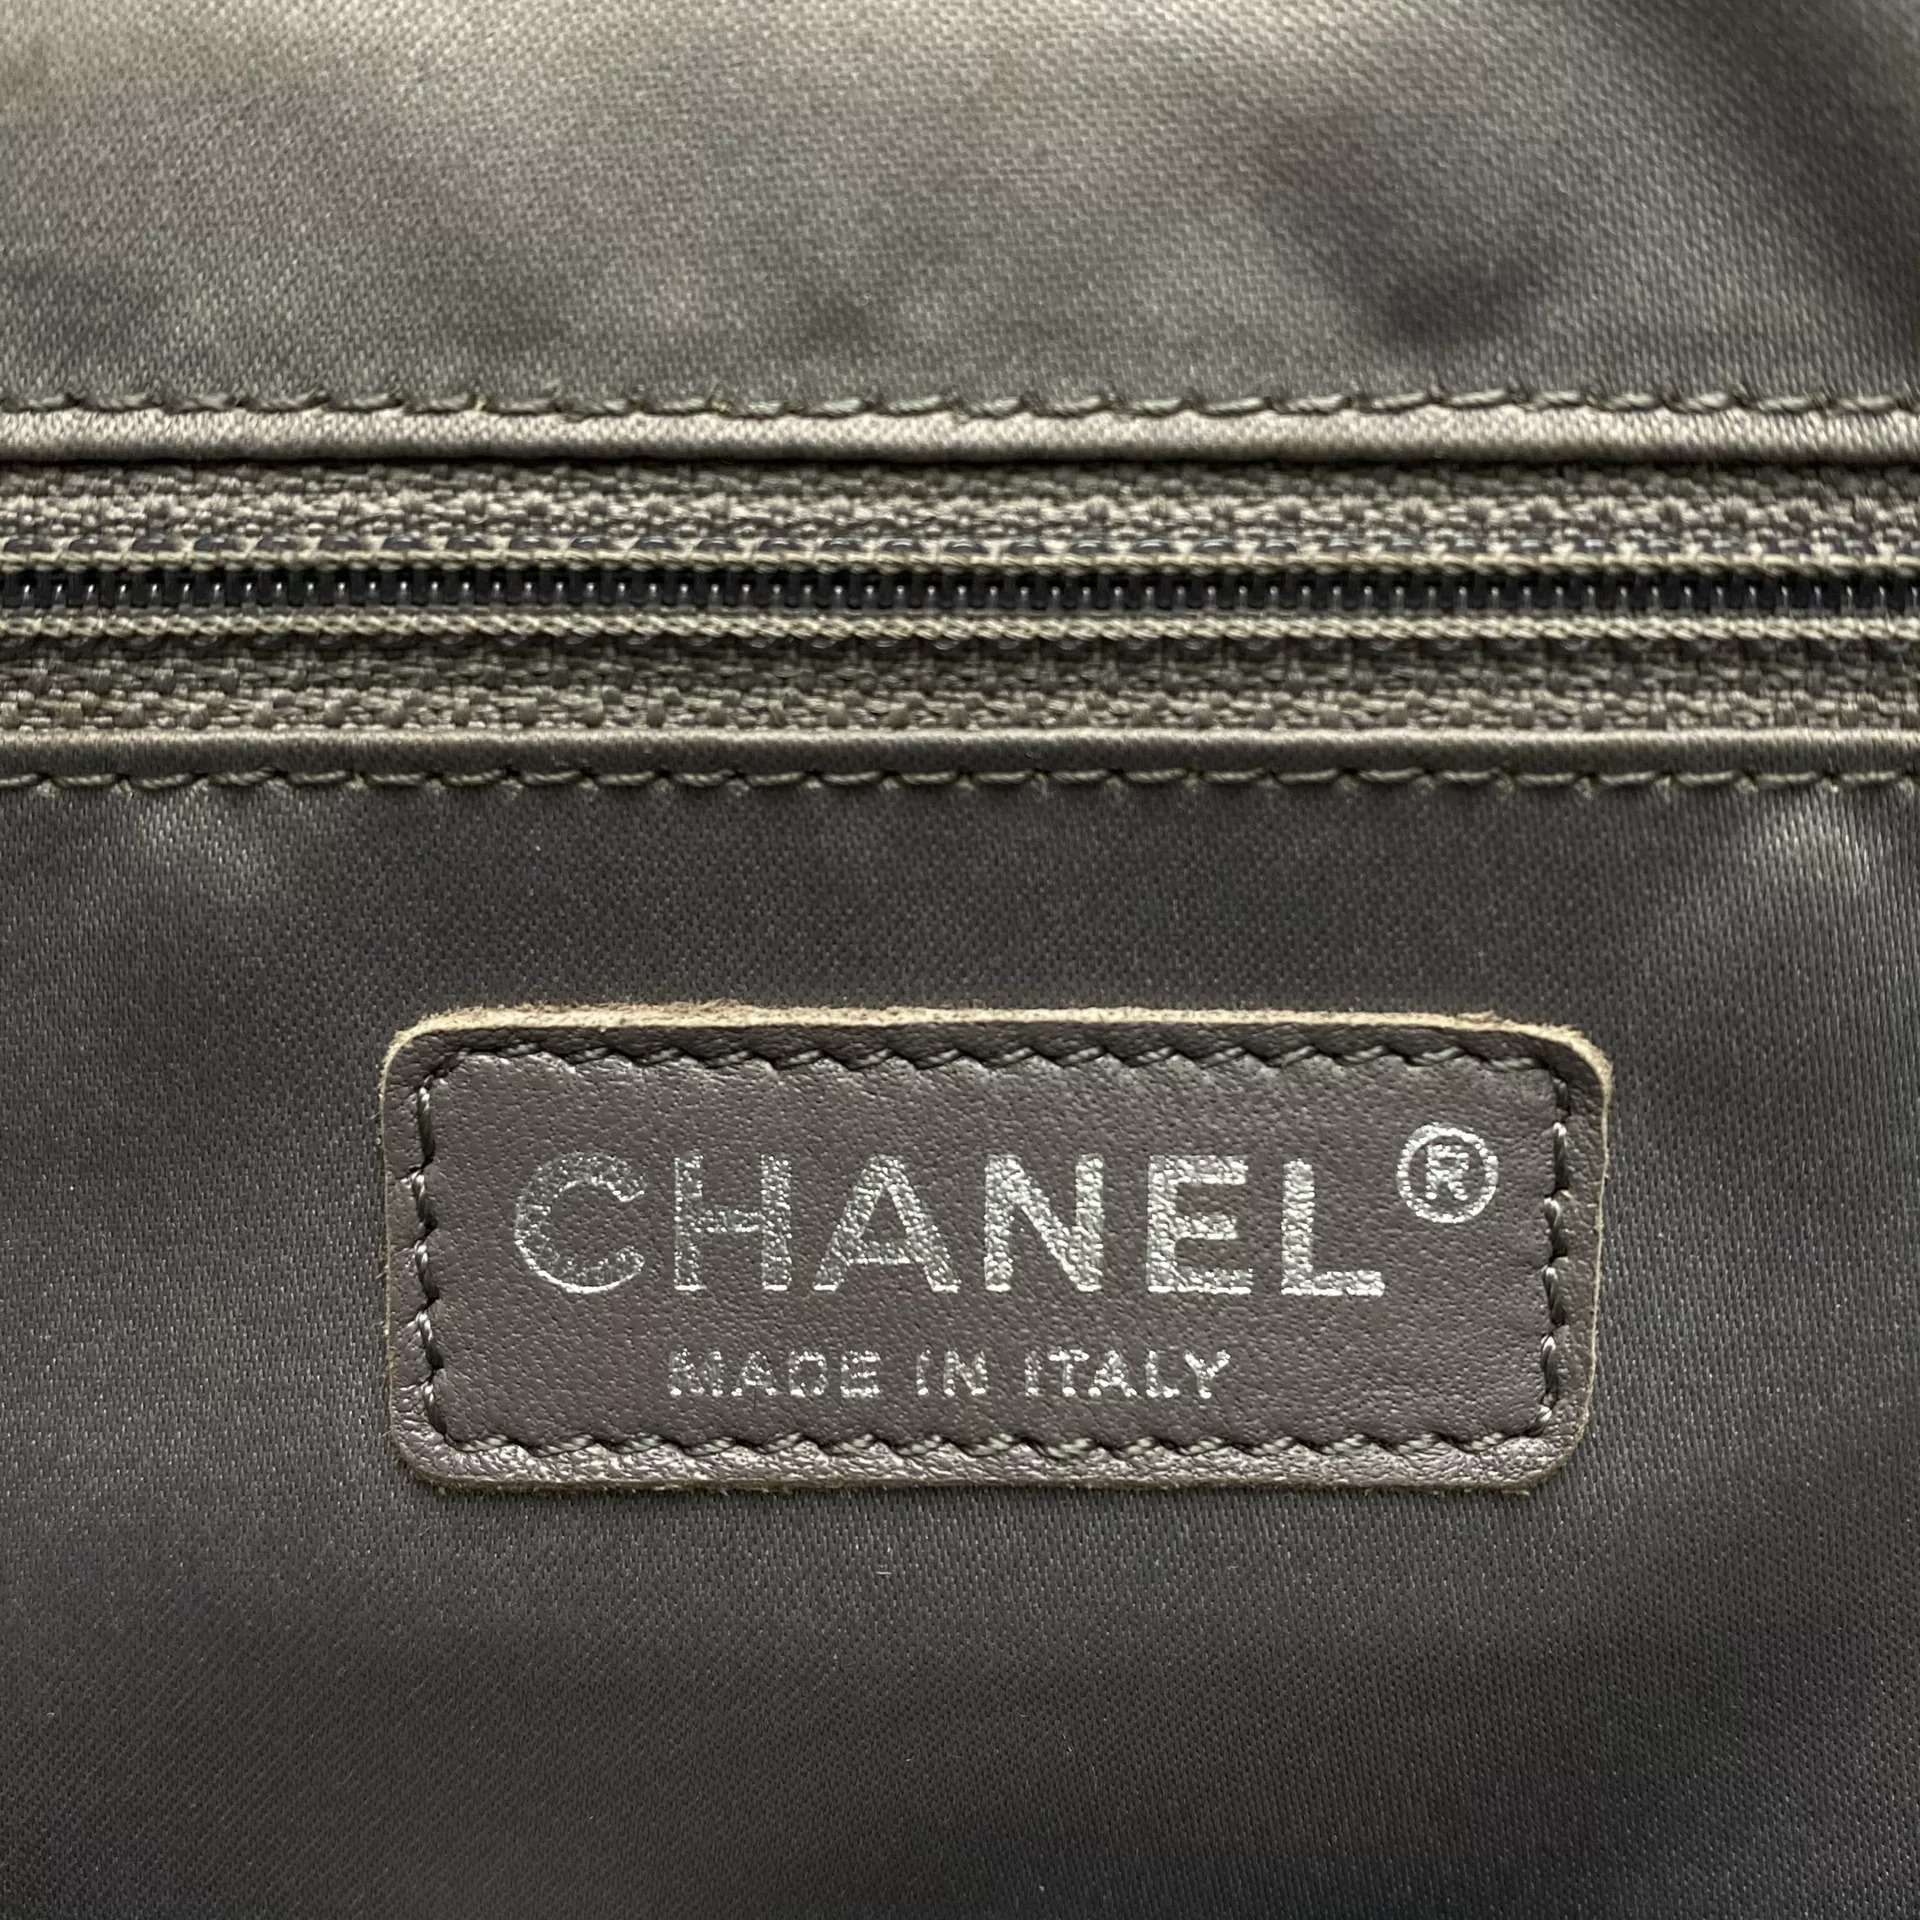 Bolsa Chanel XL Grand Shopping Tote Marinho